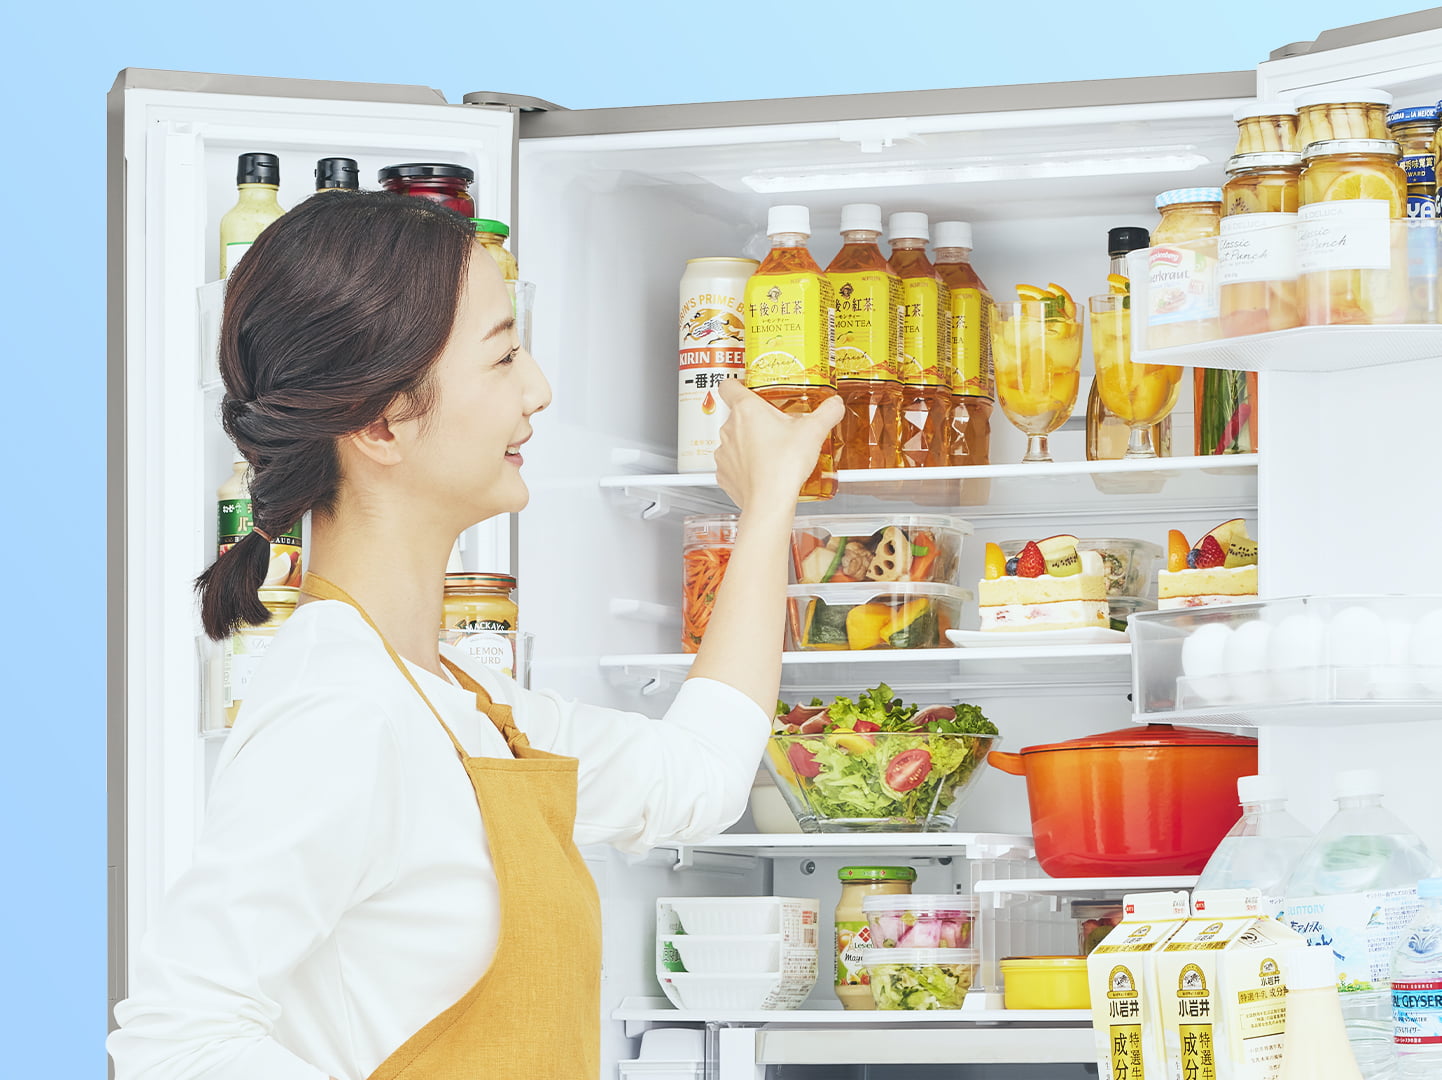 日立の大容量冷蔵庫 ： 日立の家電品